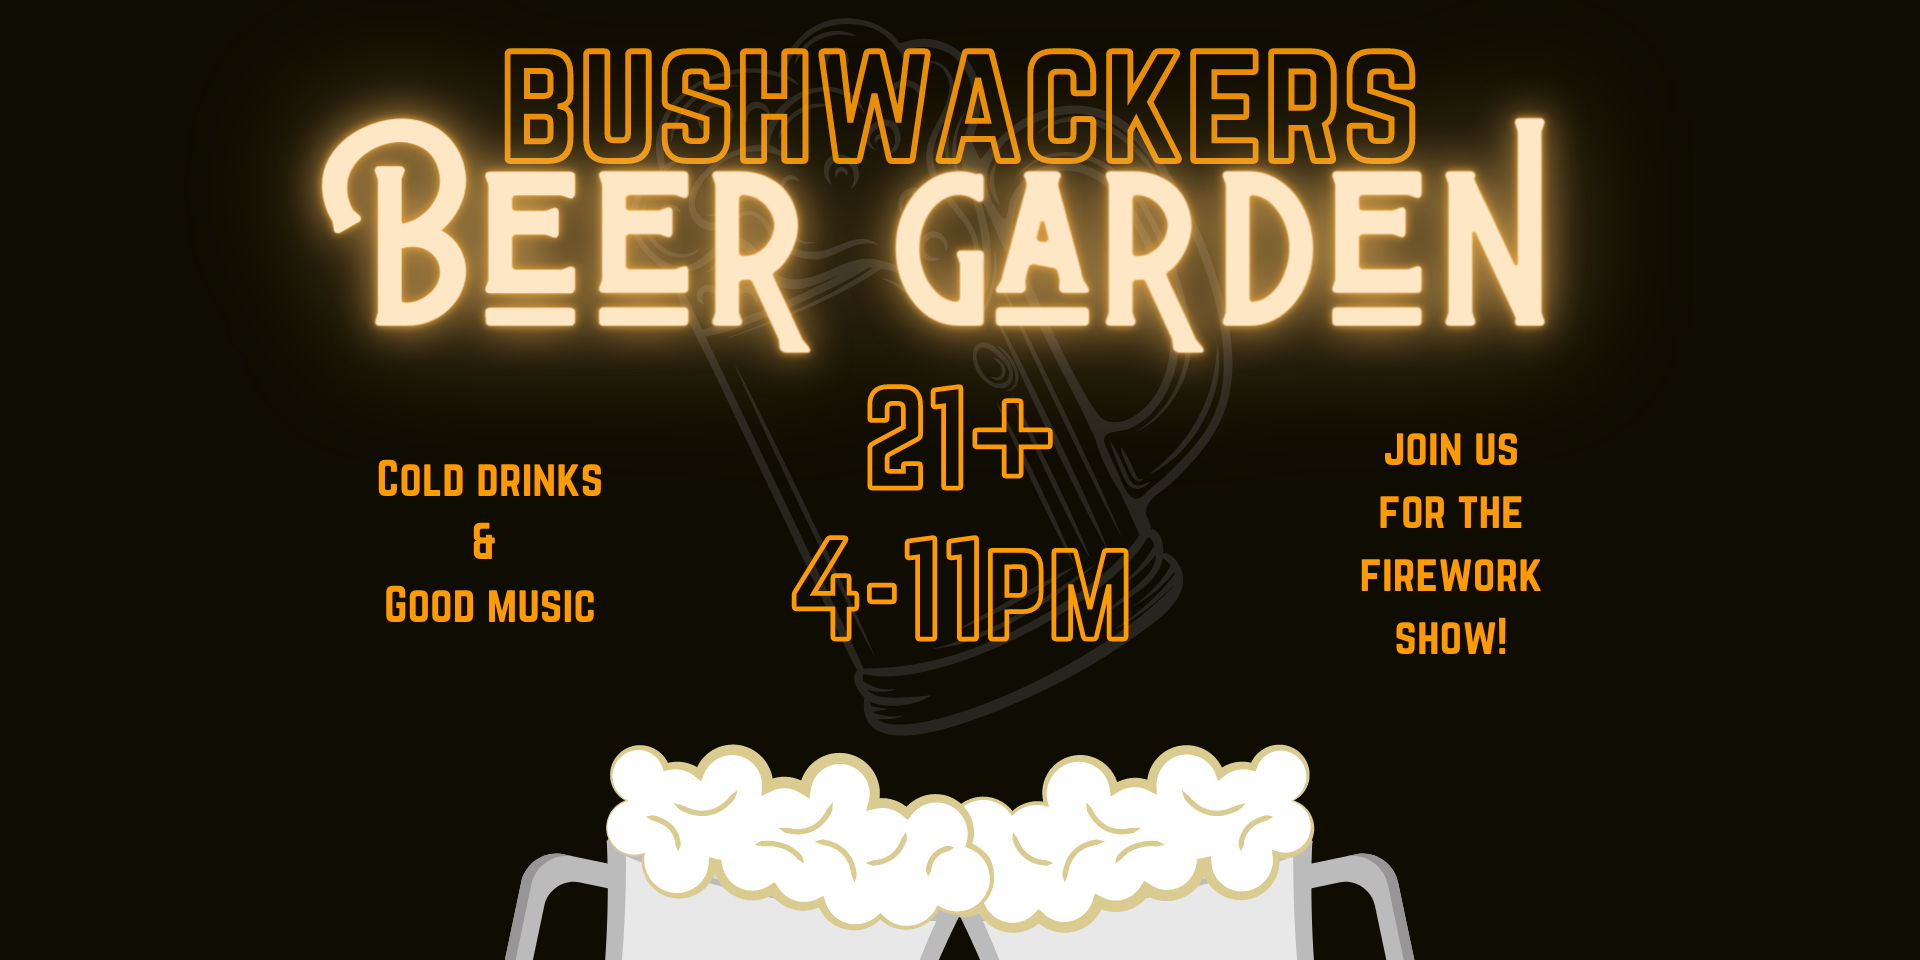 Bushwackers Beer Garden promotional image